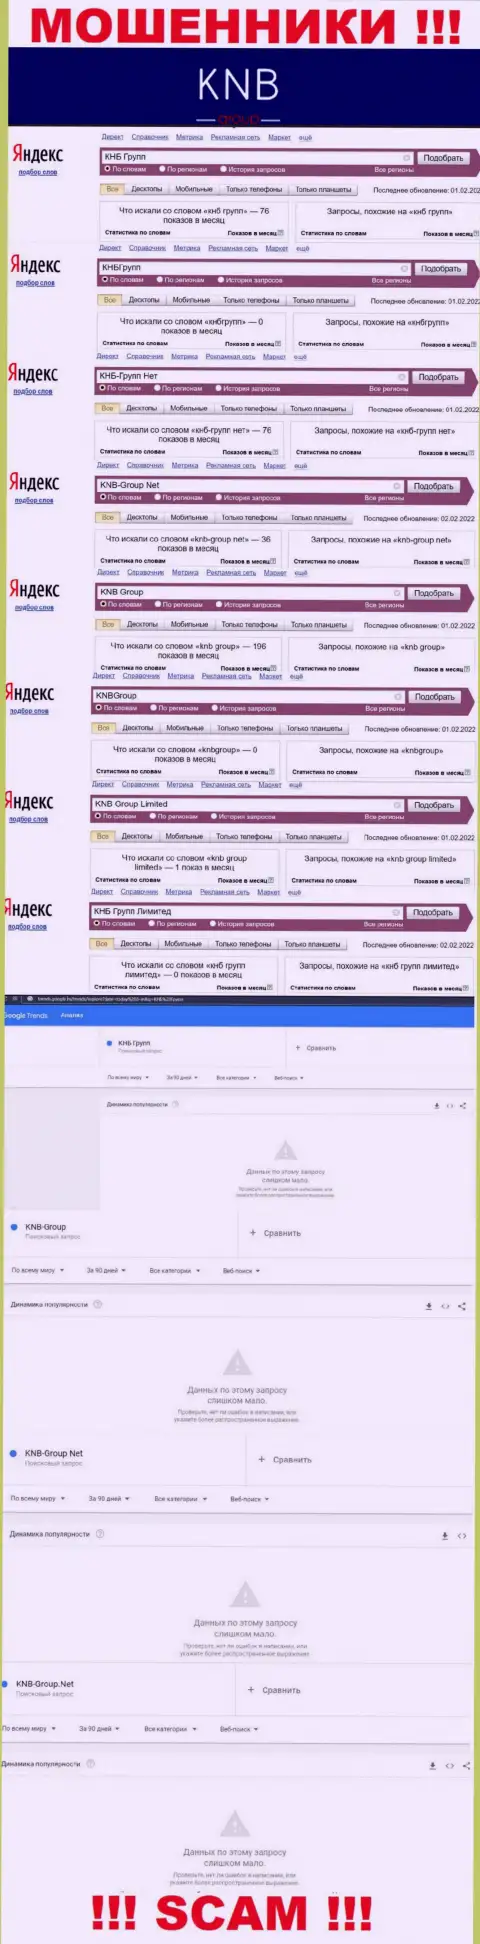 Скриншот итога онлайн-запросов по неправомерно действующей компании KNB-Group Net